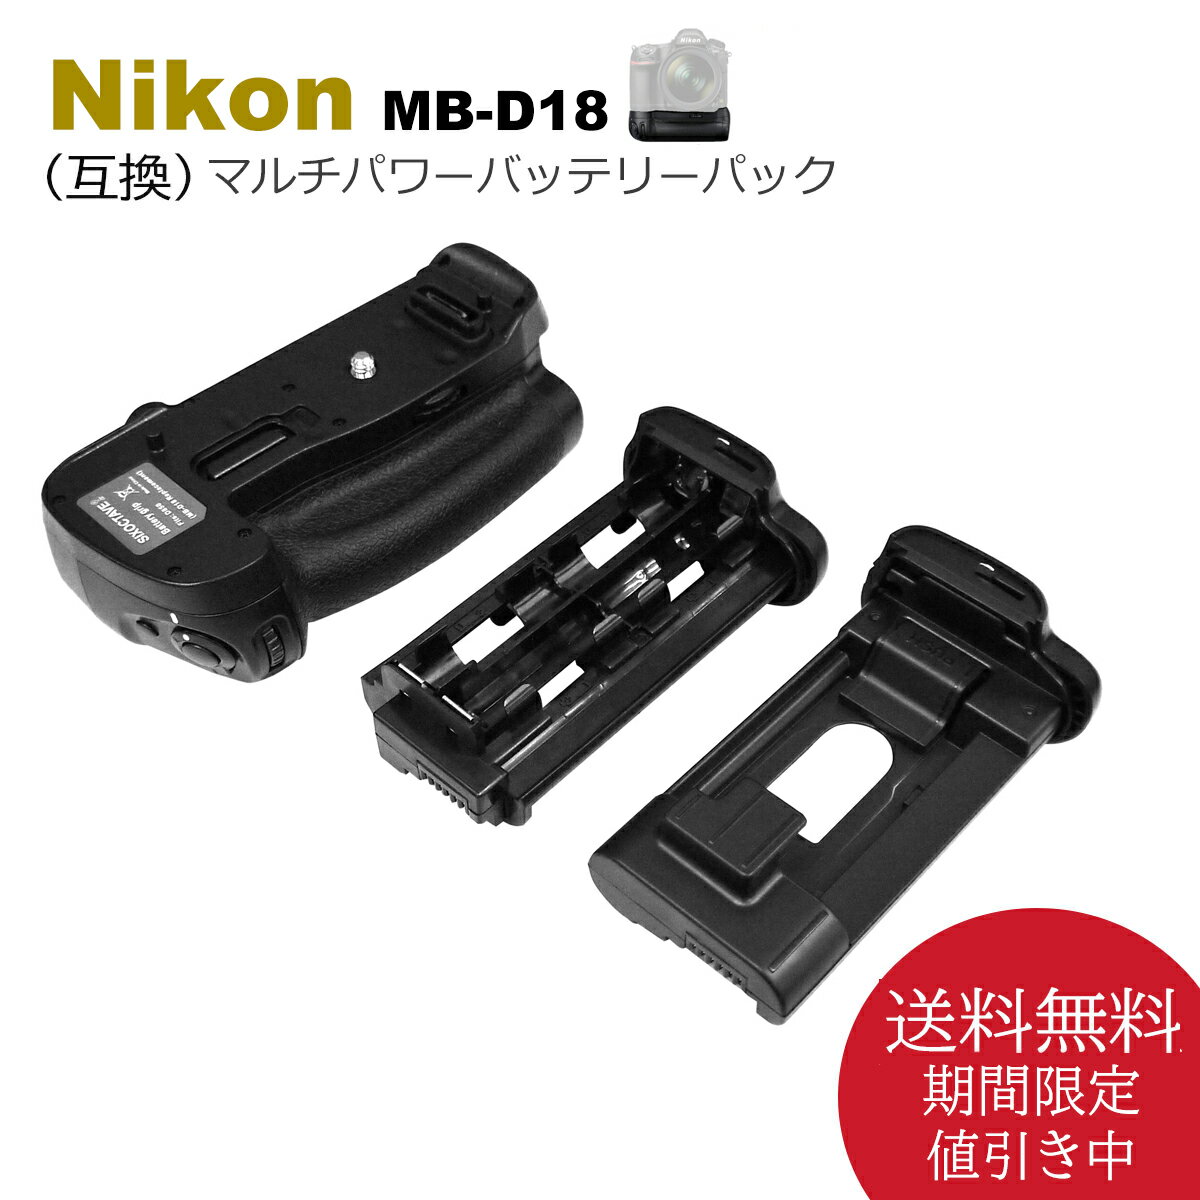 MB-D18【あす楽対応】送料無料 Nikon D850 ニコン マルチパワーバッテリーパック グリップ 互換品 一眼レフカメラ対応 別売り EN-EL15a EN-EL15e EN-EL15c / EN-EL18 EN-EL18a EN-EL18b EN-EL1…